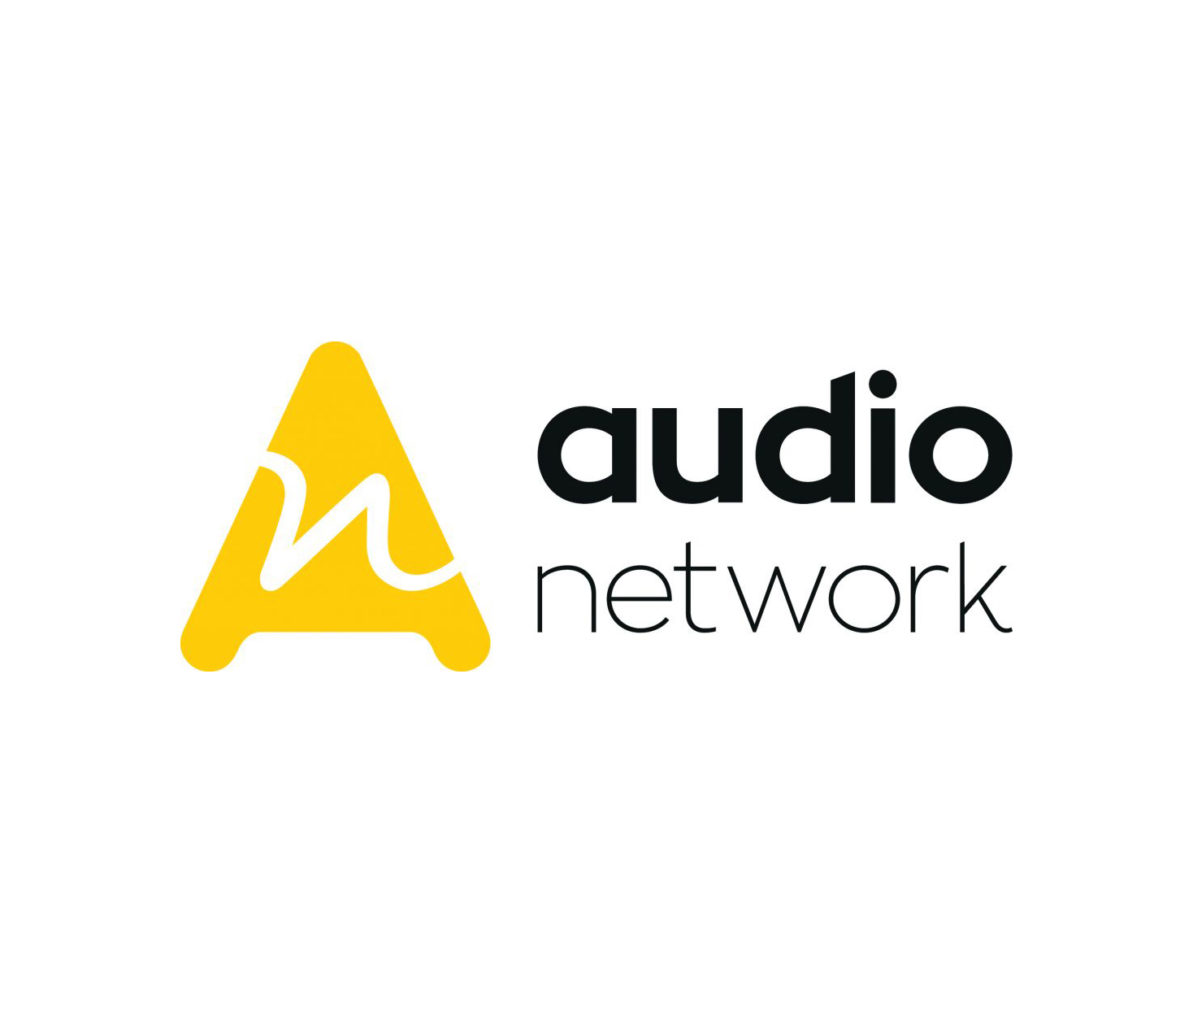 Audio Network